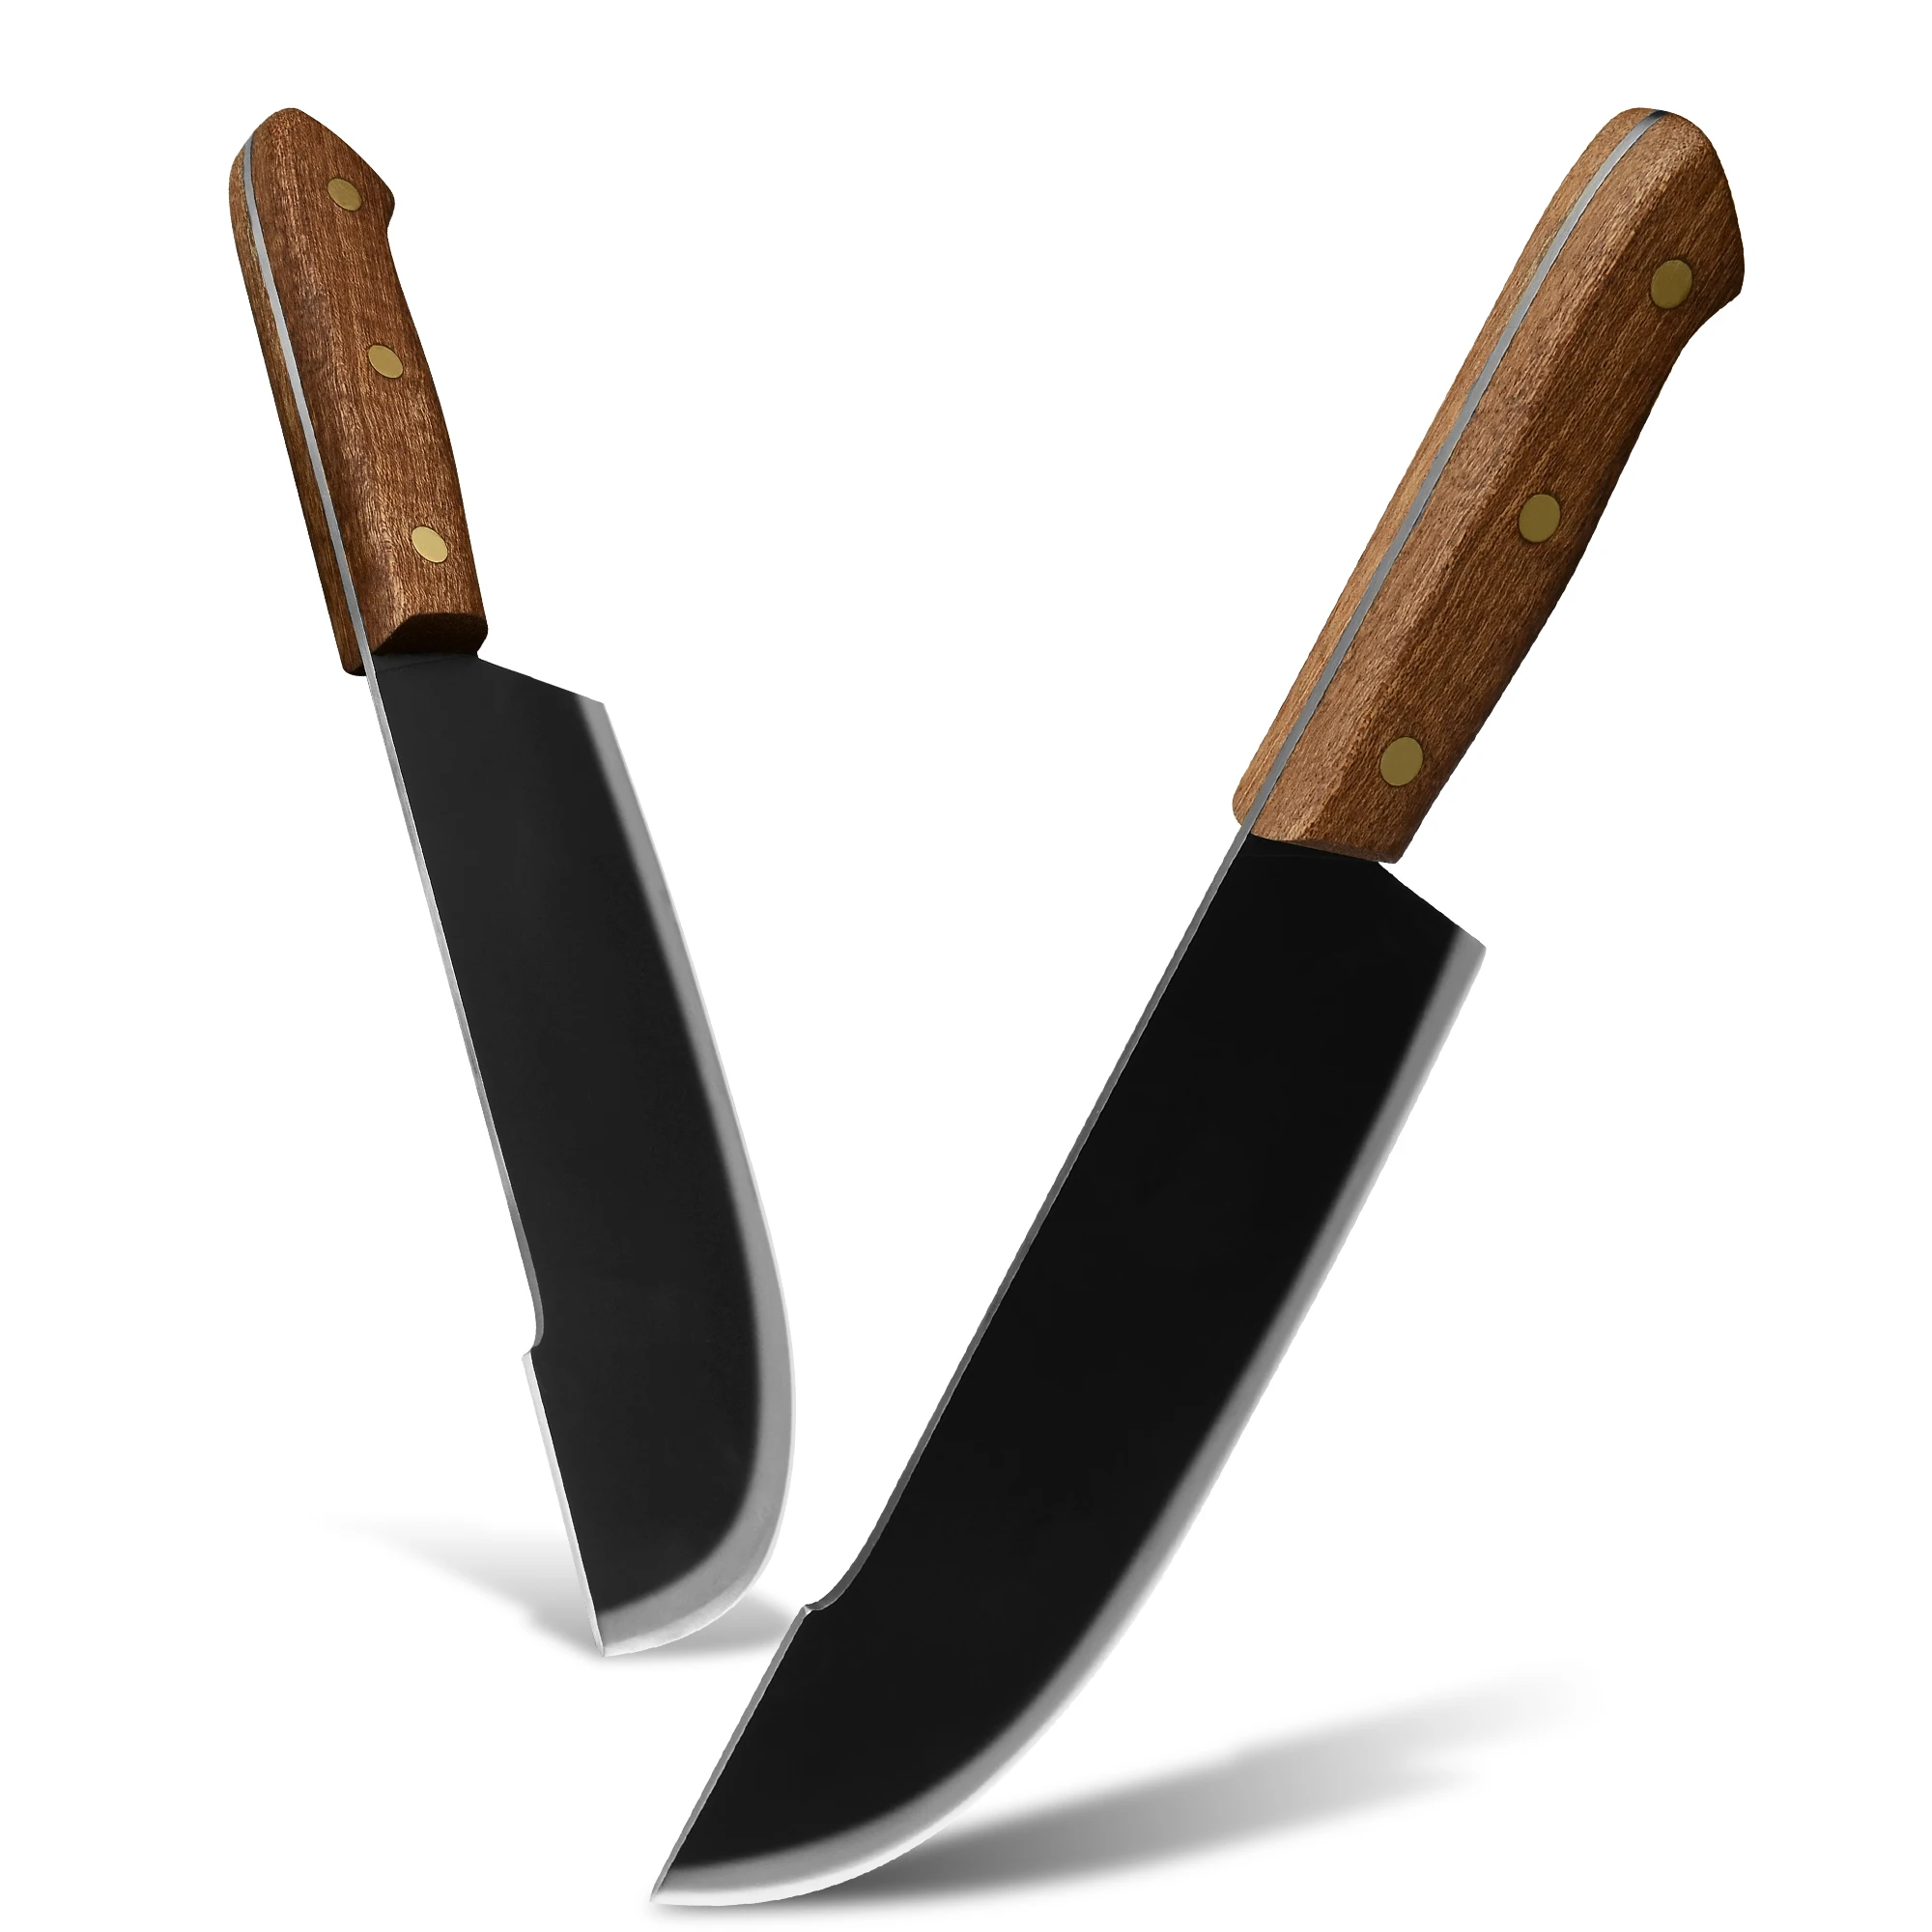 

Кухонный нож 8 дюймов из нержавеющей стали шеф-повара, нож мясника для убоя, ножи для нарезки рыбы, овощей, мяса с деревянной ручкой